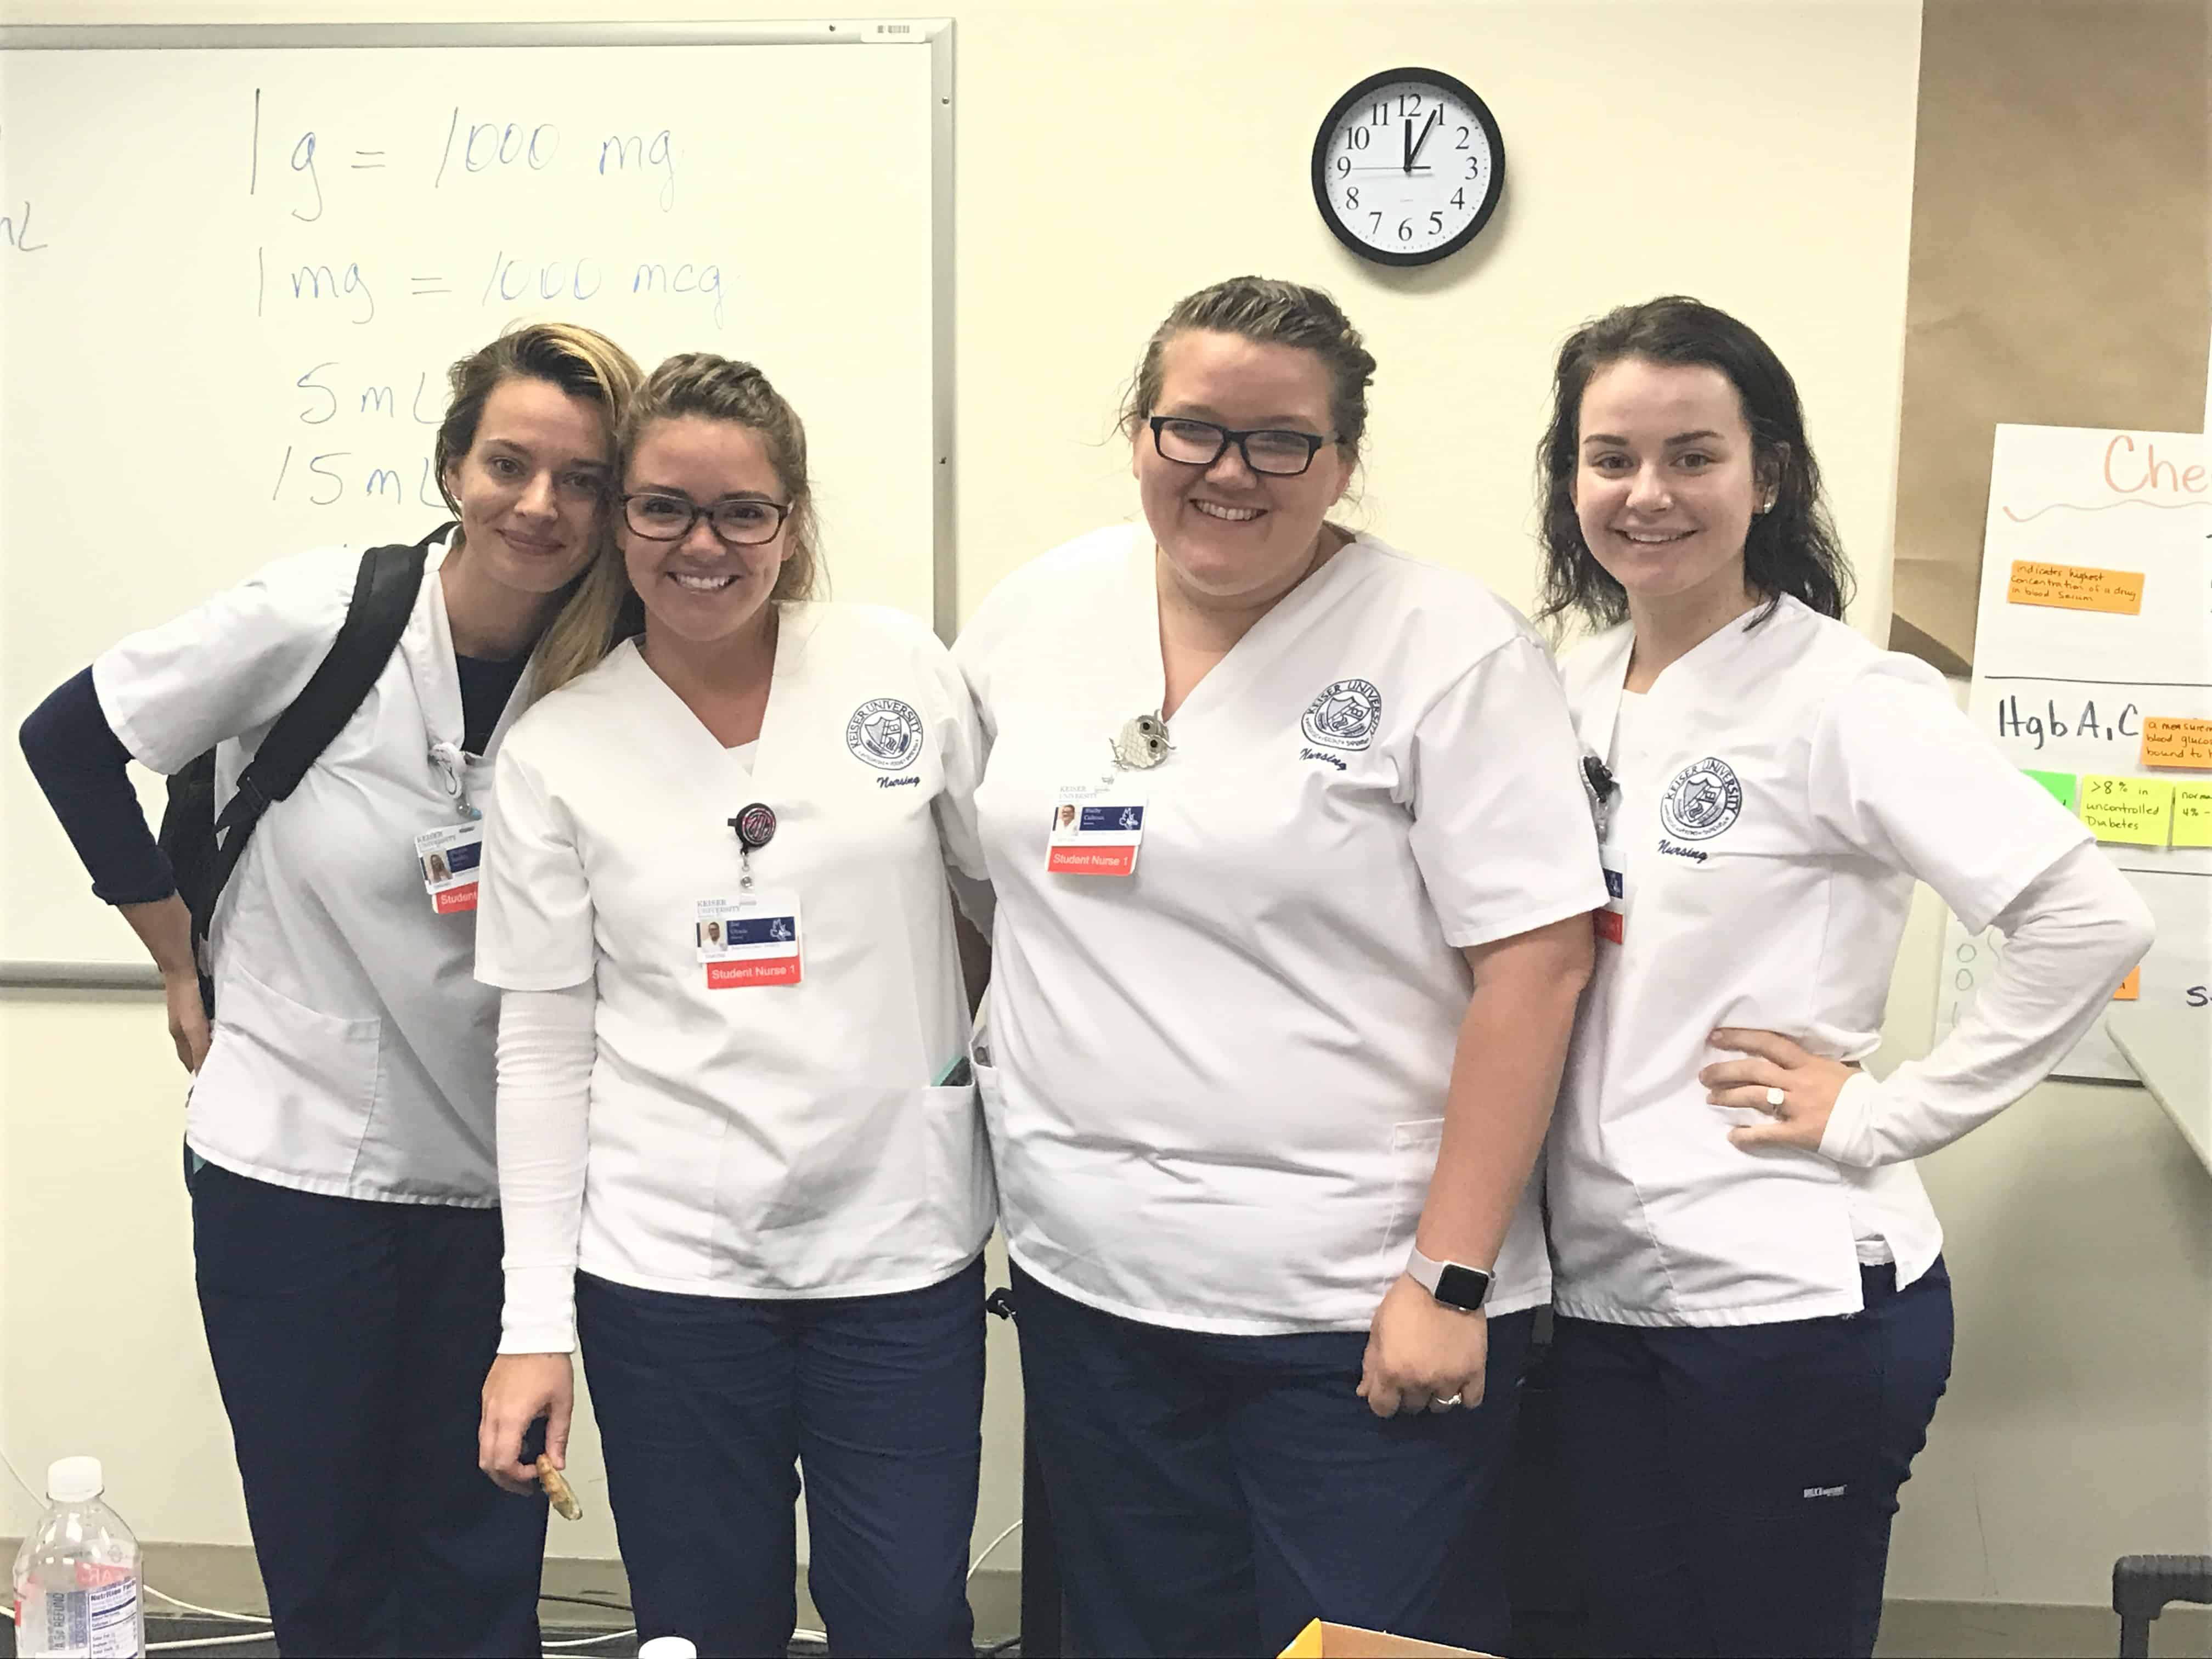 2017 Florida Nursing Students Week Celebrated at Sarasota Campus